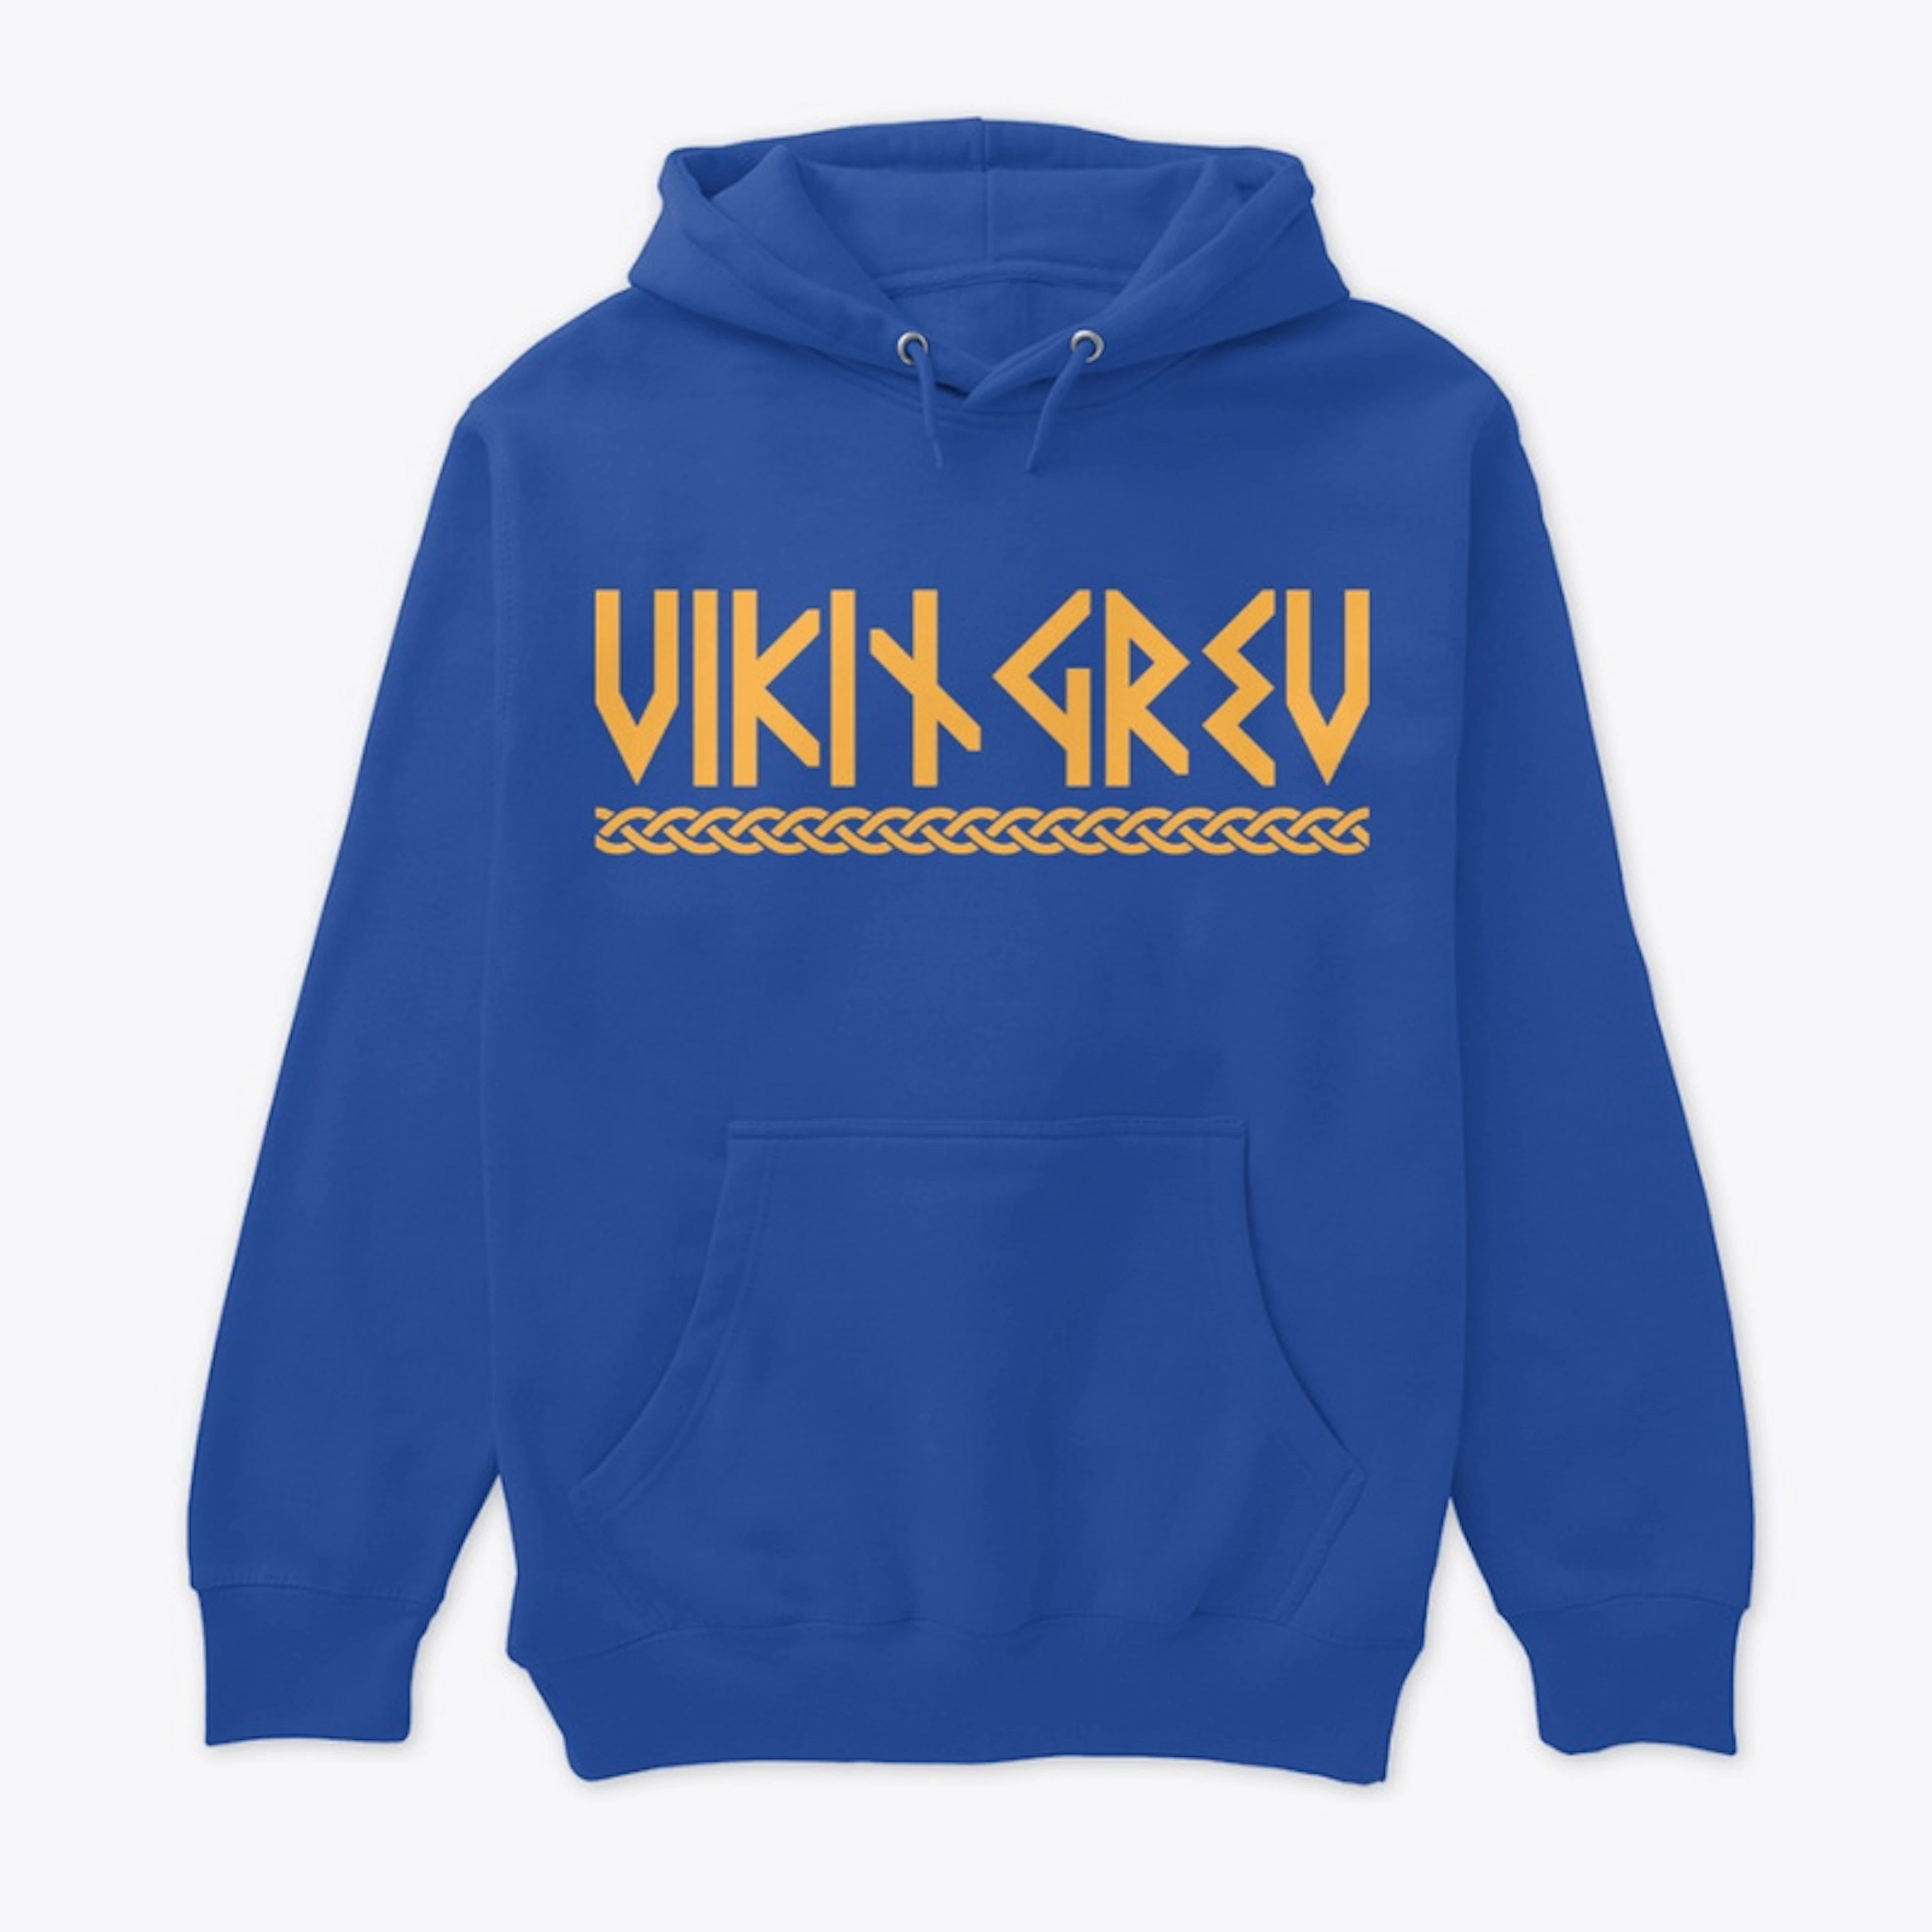 Viking "Rune" Design Hoodie *Limited*